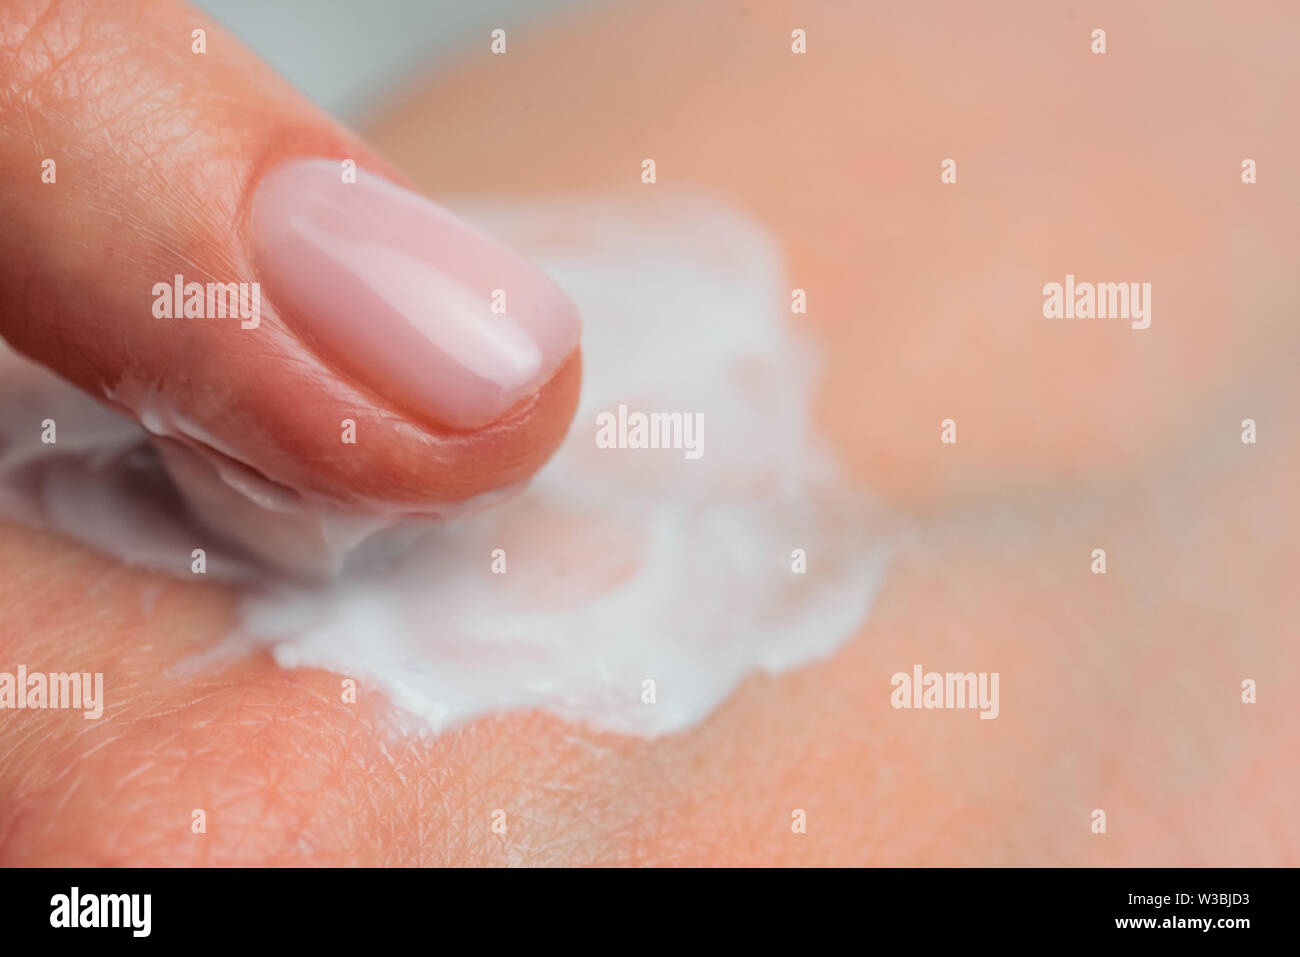 Los dedos aplicar crema para la piel. Cerrar Foto de stock